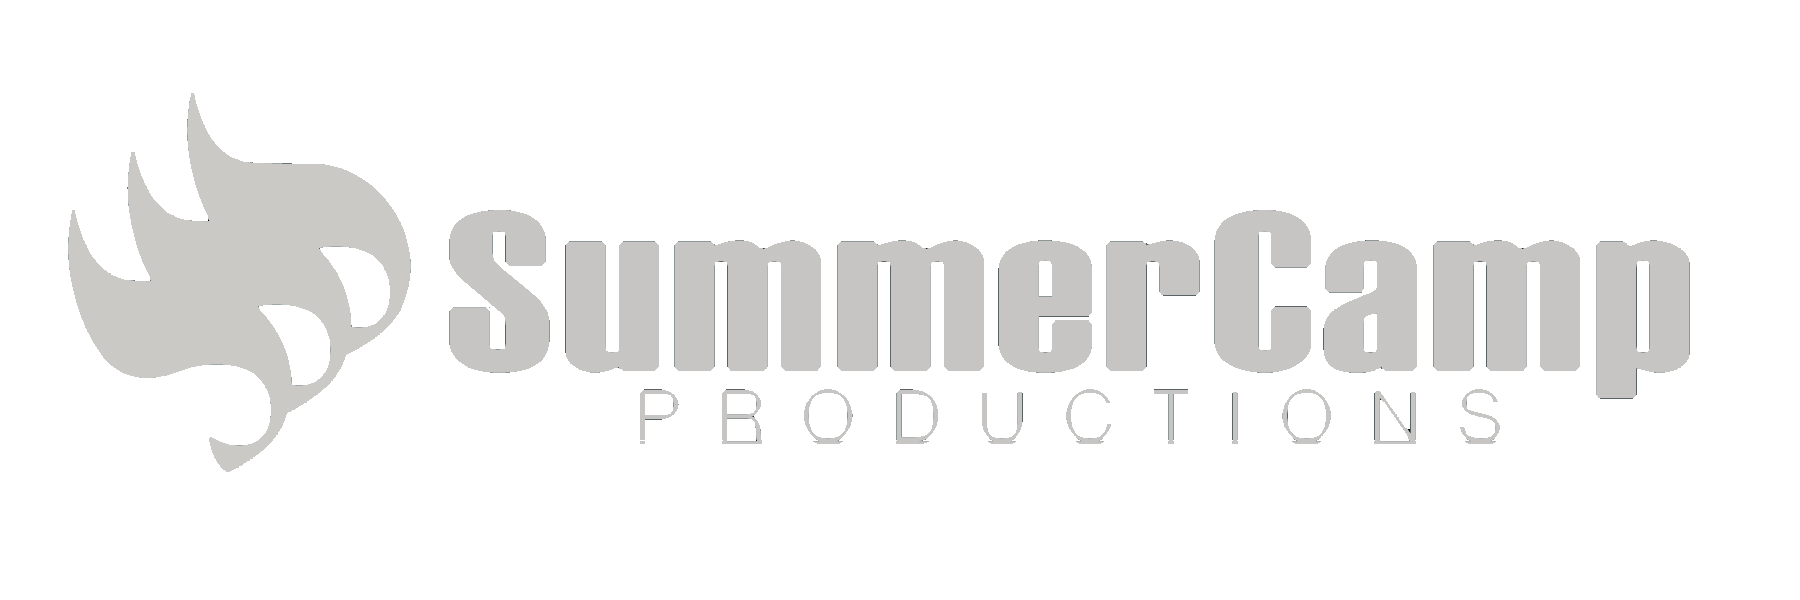 Summercamp Producions